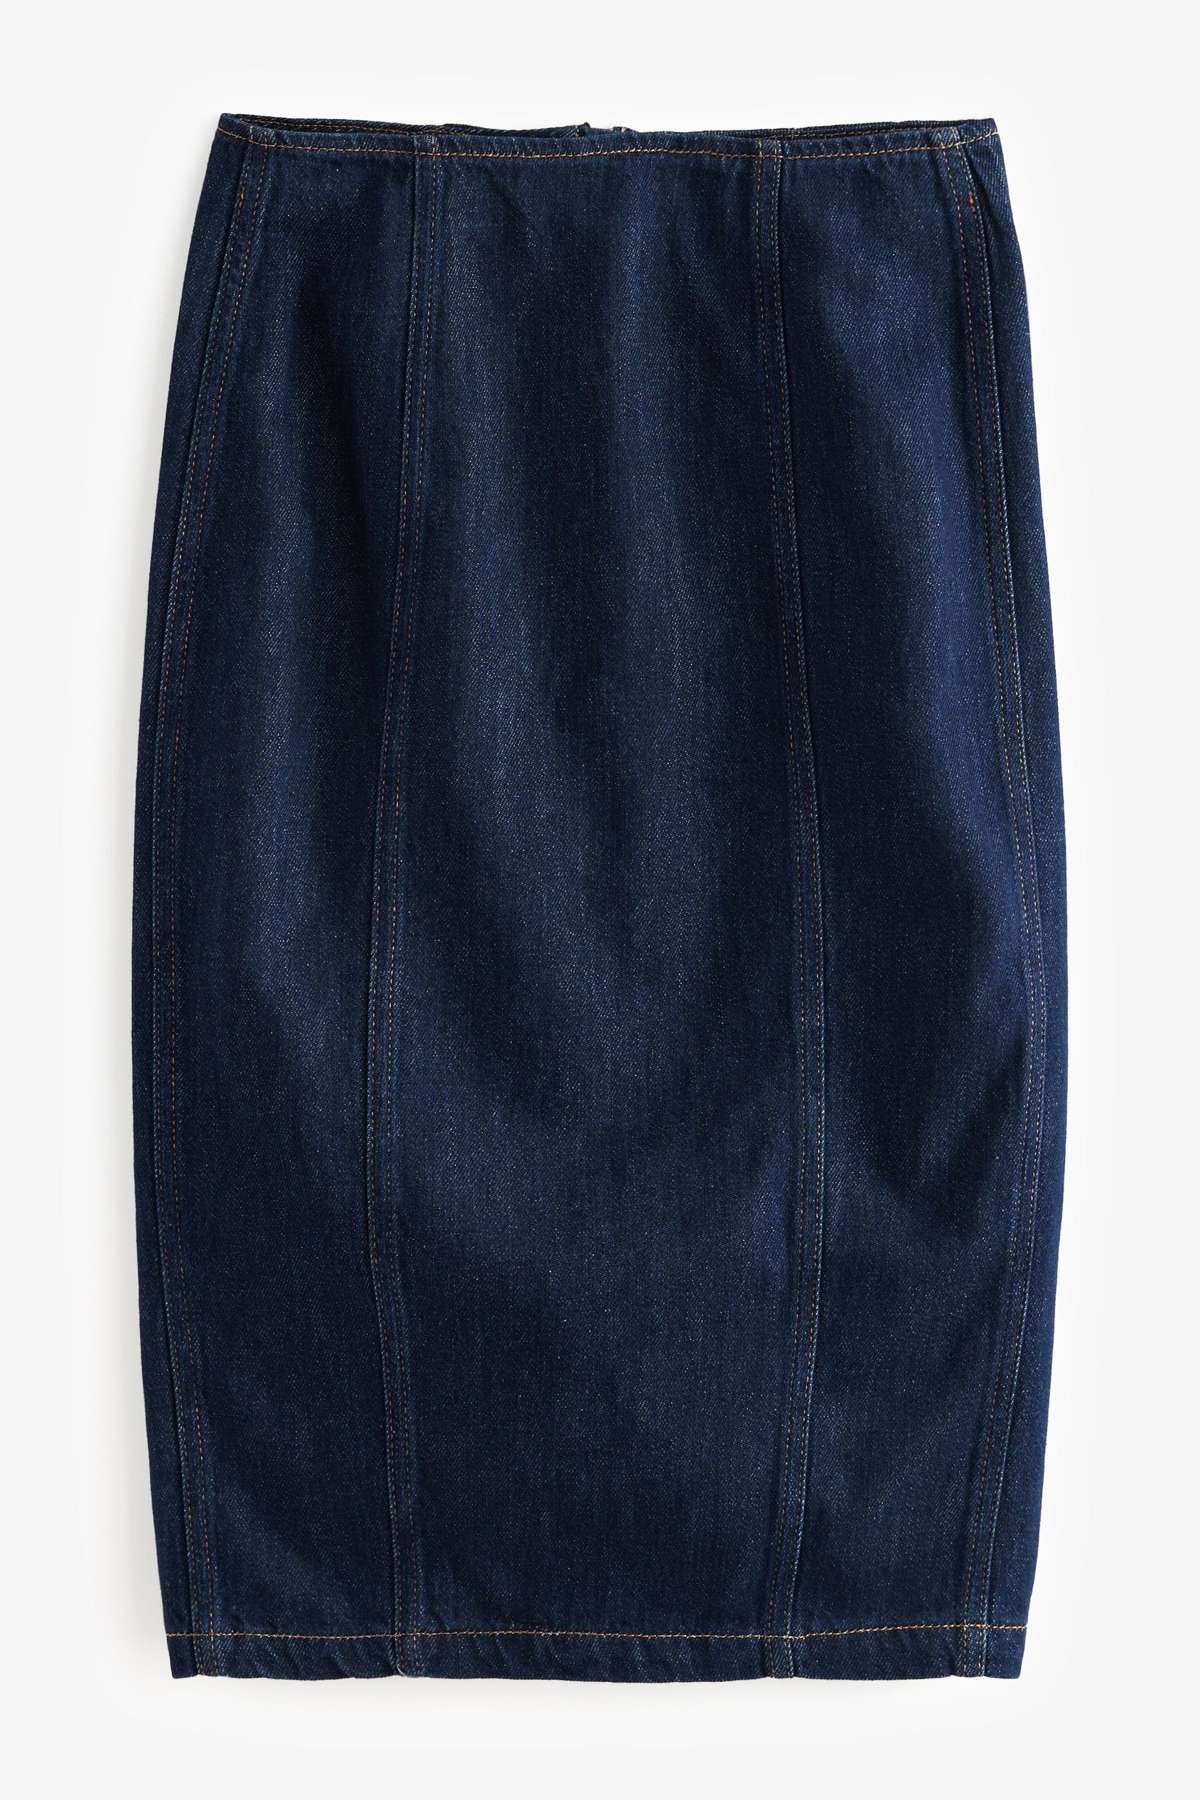 Джинсовая юбка-карандаш из джинсовой ткани (1 шт.)